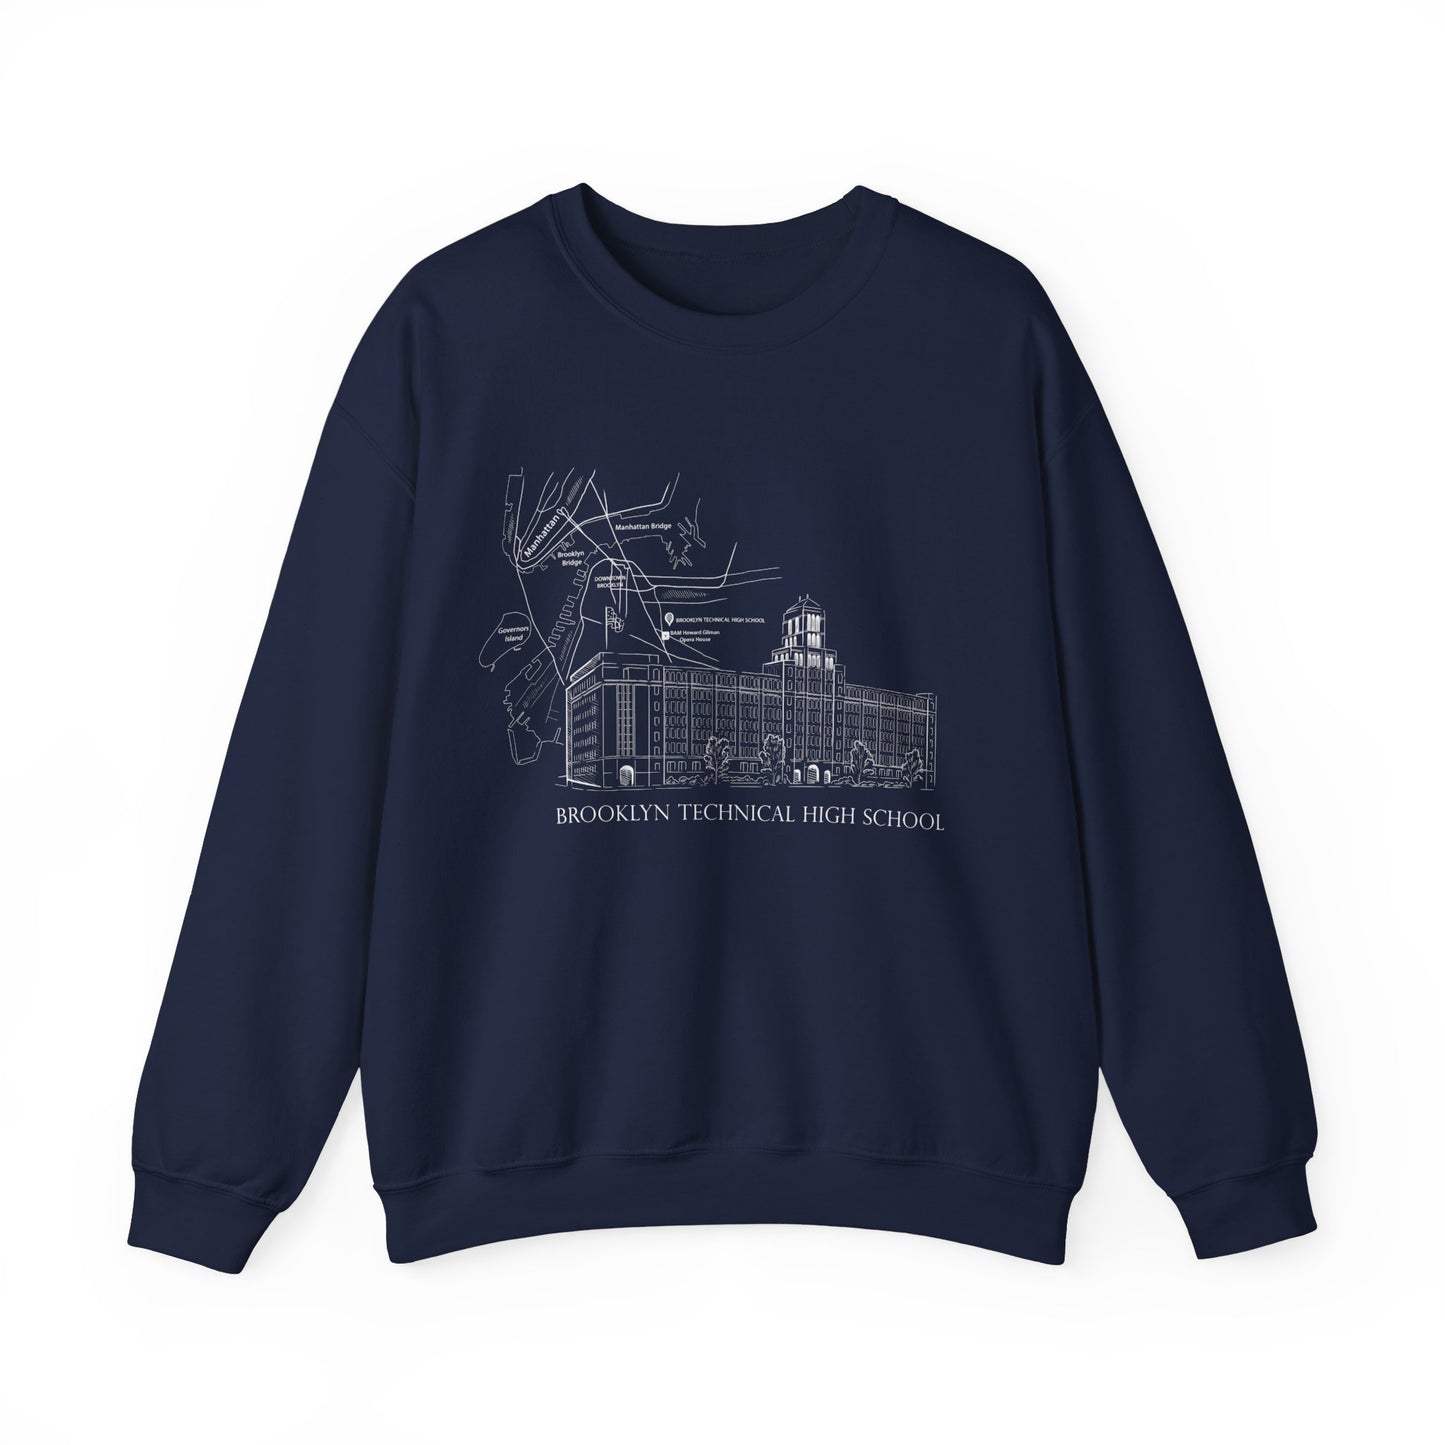 Boutique - Monochrome Building & Map - Men's Heavy Blend Crewneck Sweatshirt